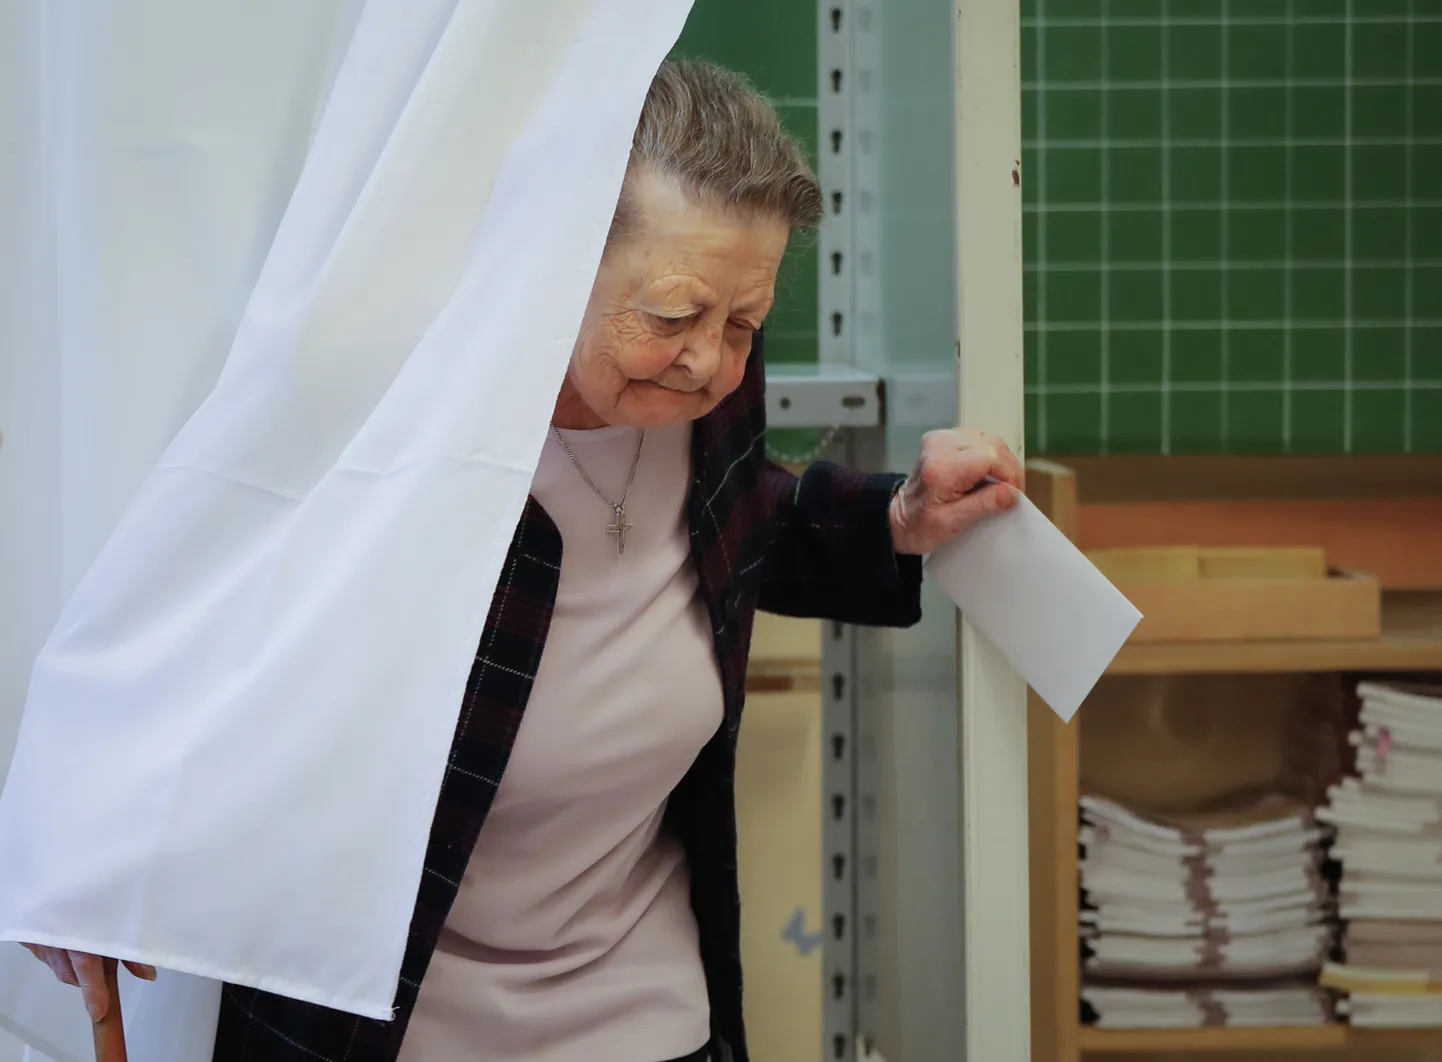 Ungarlanna täna hääletuskabiinist väljumas.